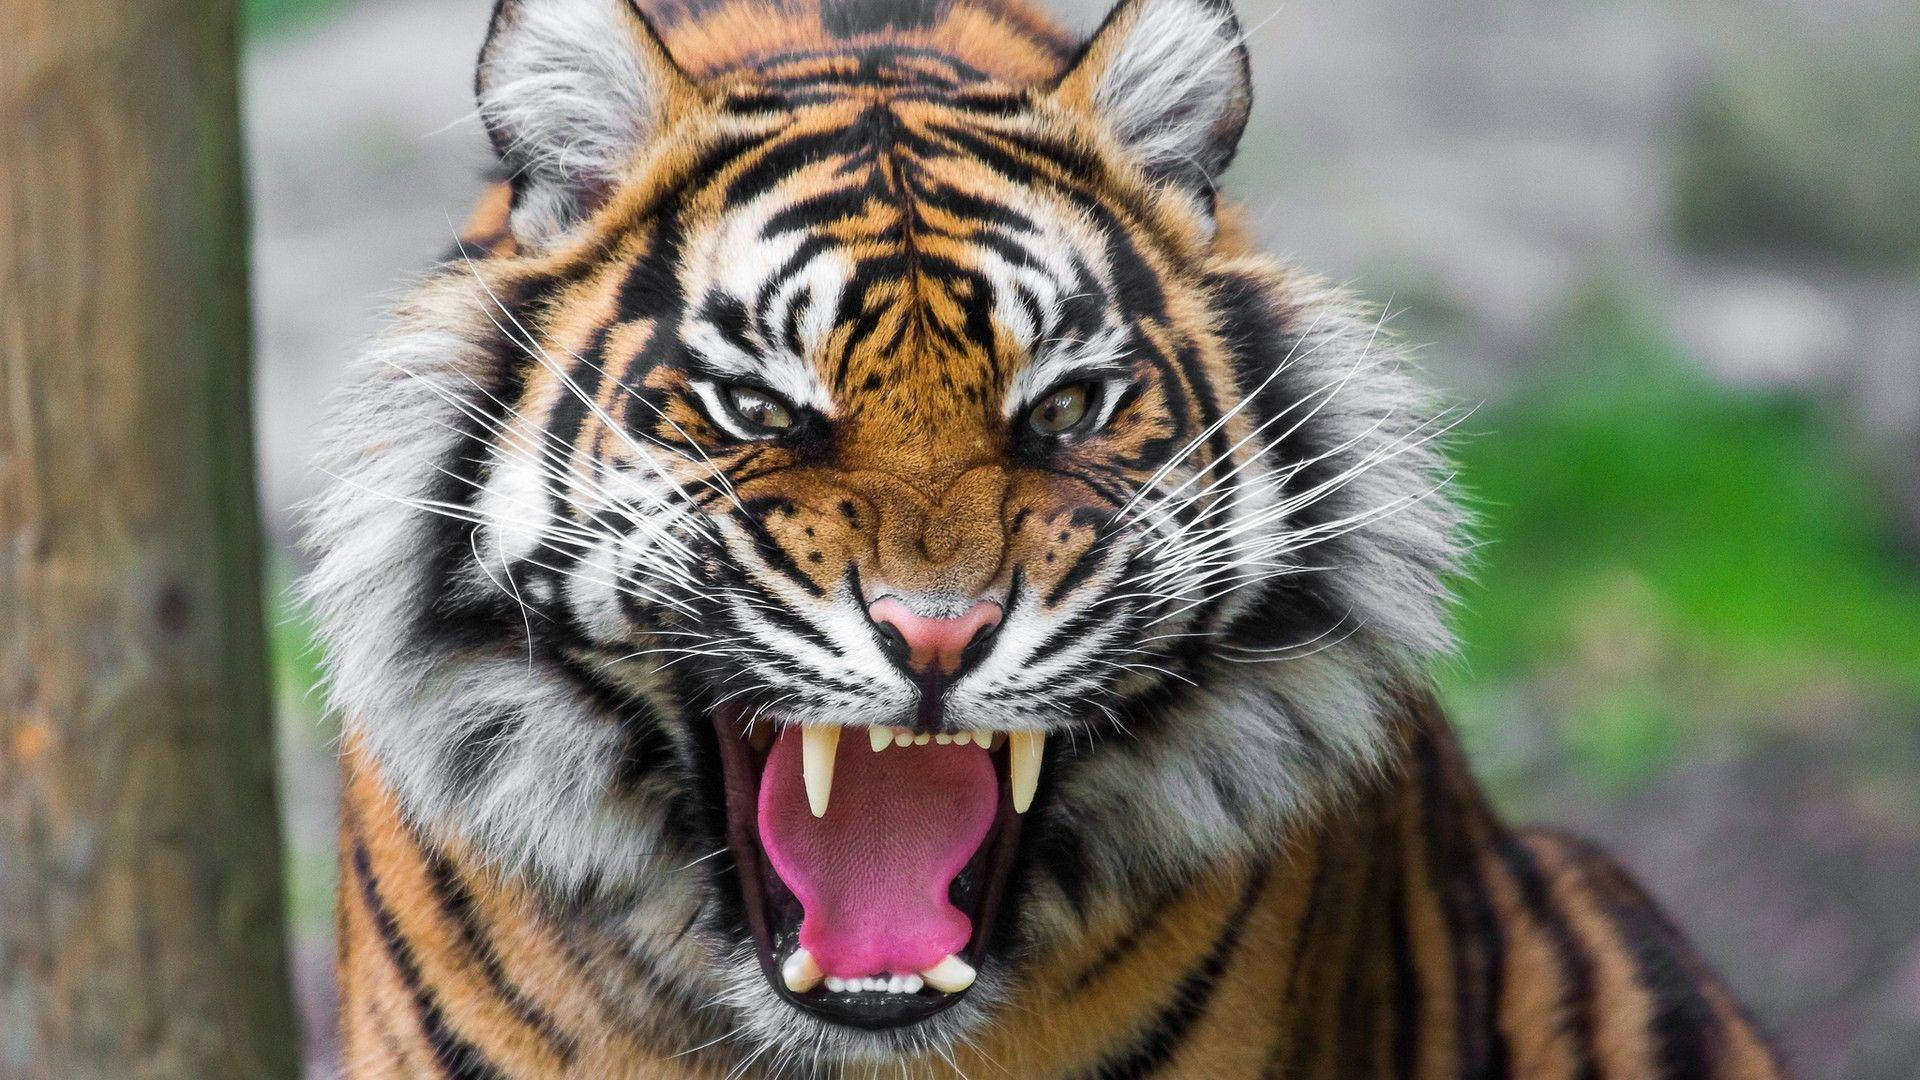 Angry Tiger Wallpaper